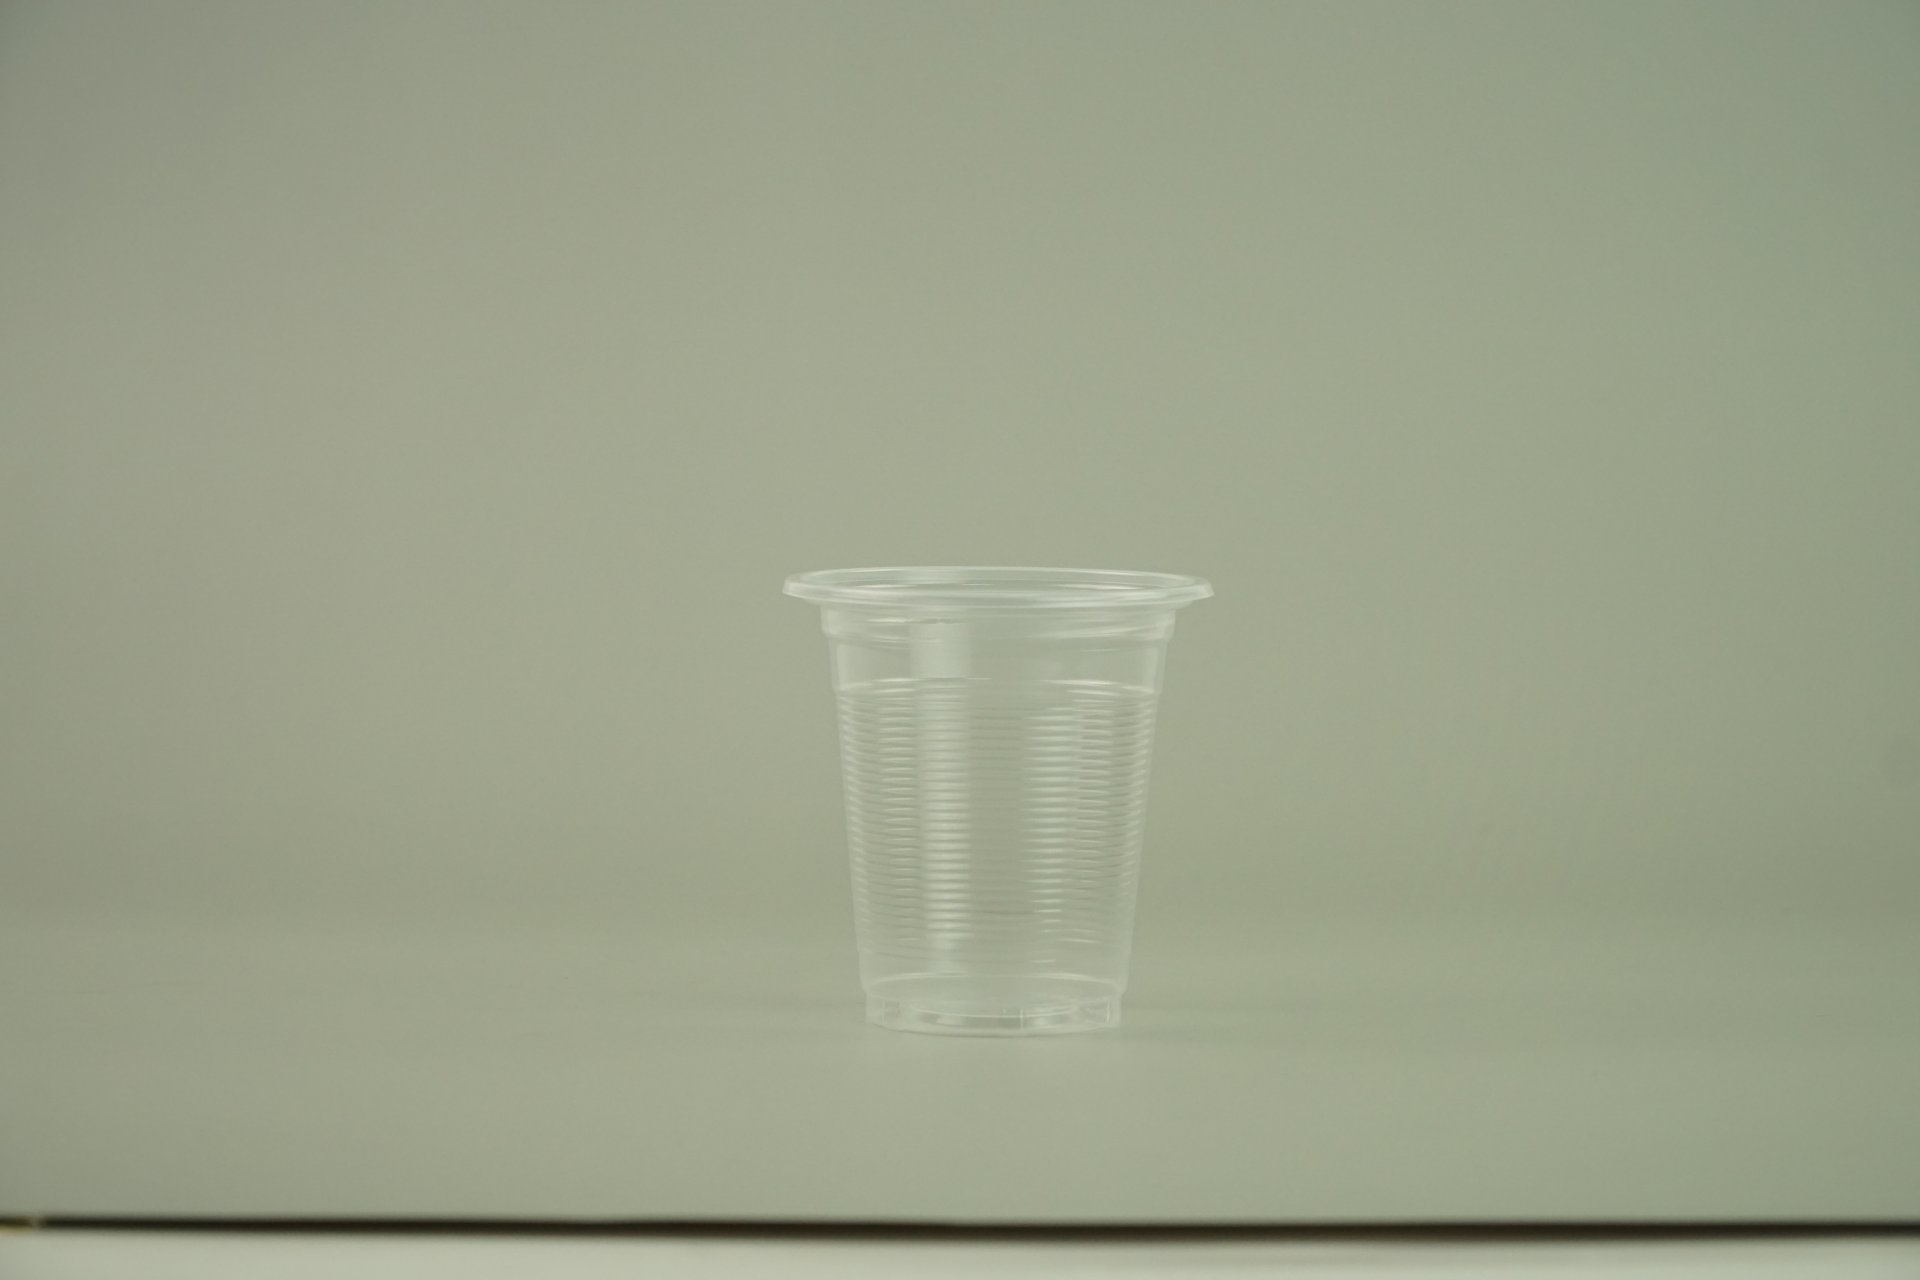 แก้วน้ำ 9 ออนซ์ แก้วพลาสติก PP ลอนใส รุ่นประหยัด ขนาด 8.5x9x5 cm.